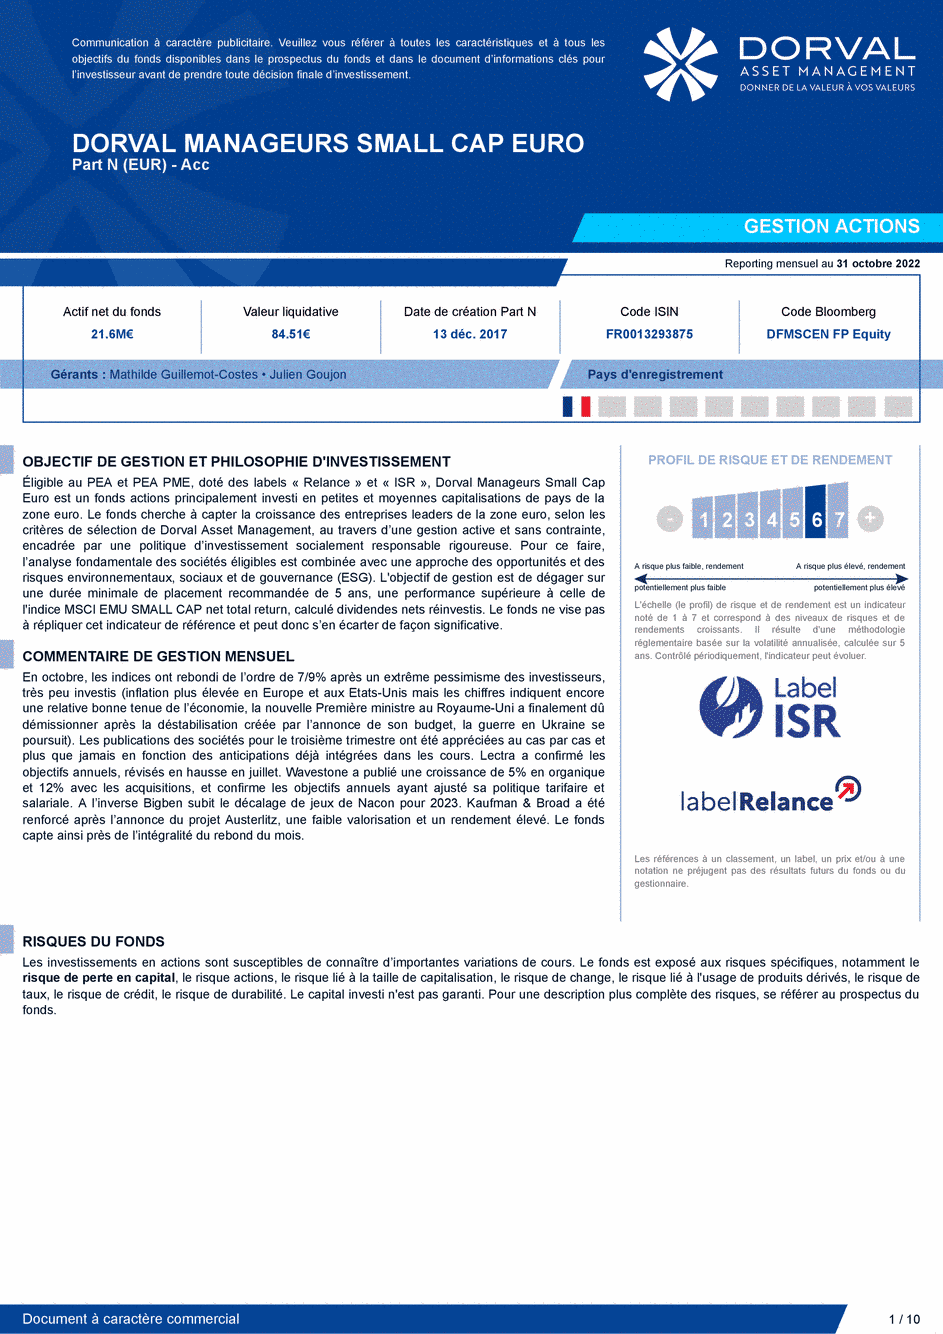 Reporting DORVAL MANAGEURS SMALL CAP EURO N - 31/10/2022 - Français